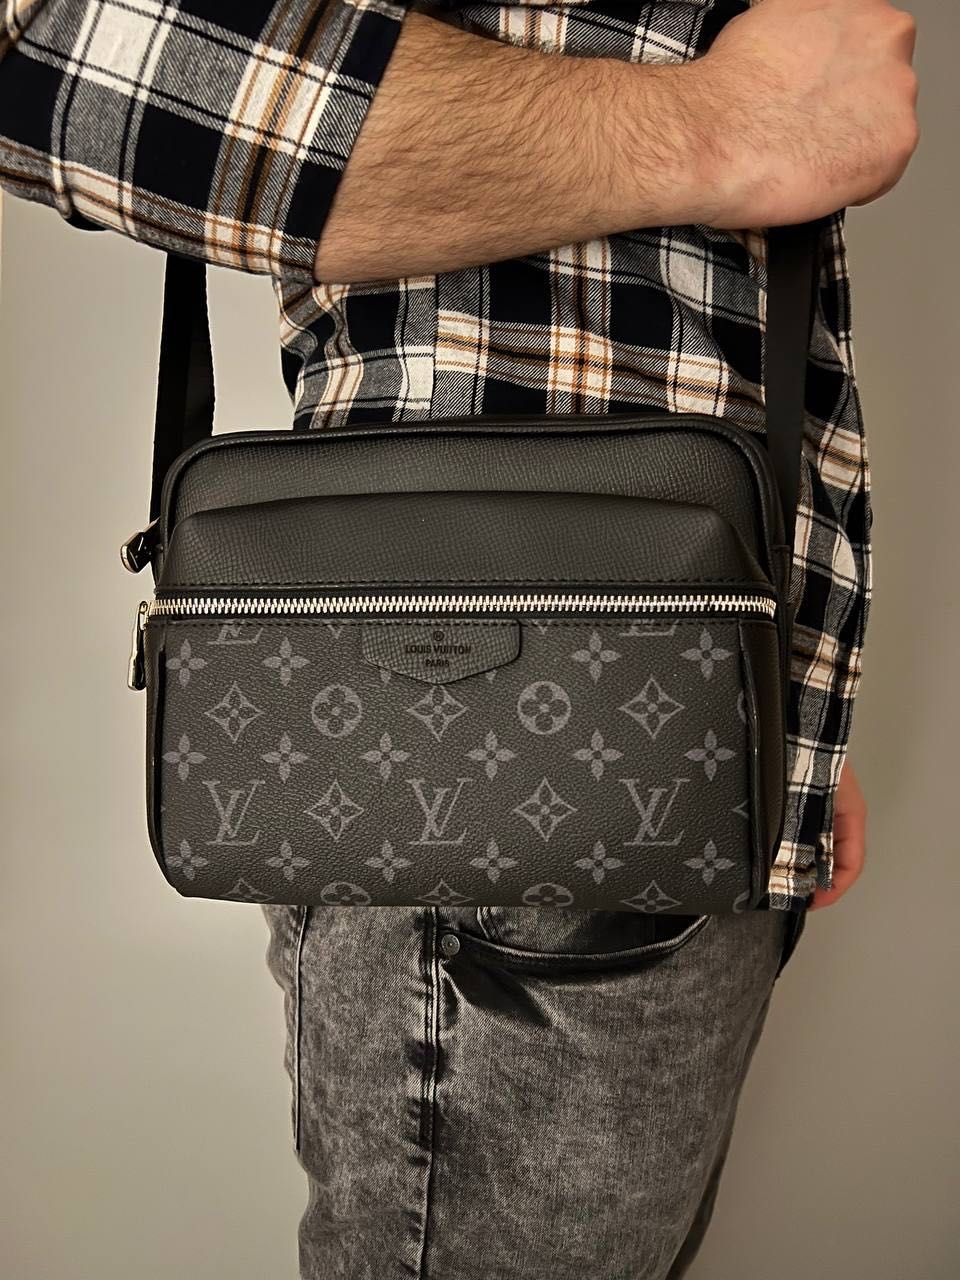 Мужская сумка на через плече луи витон|чоловіча барсетка Louis Vuitton